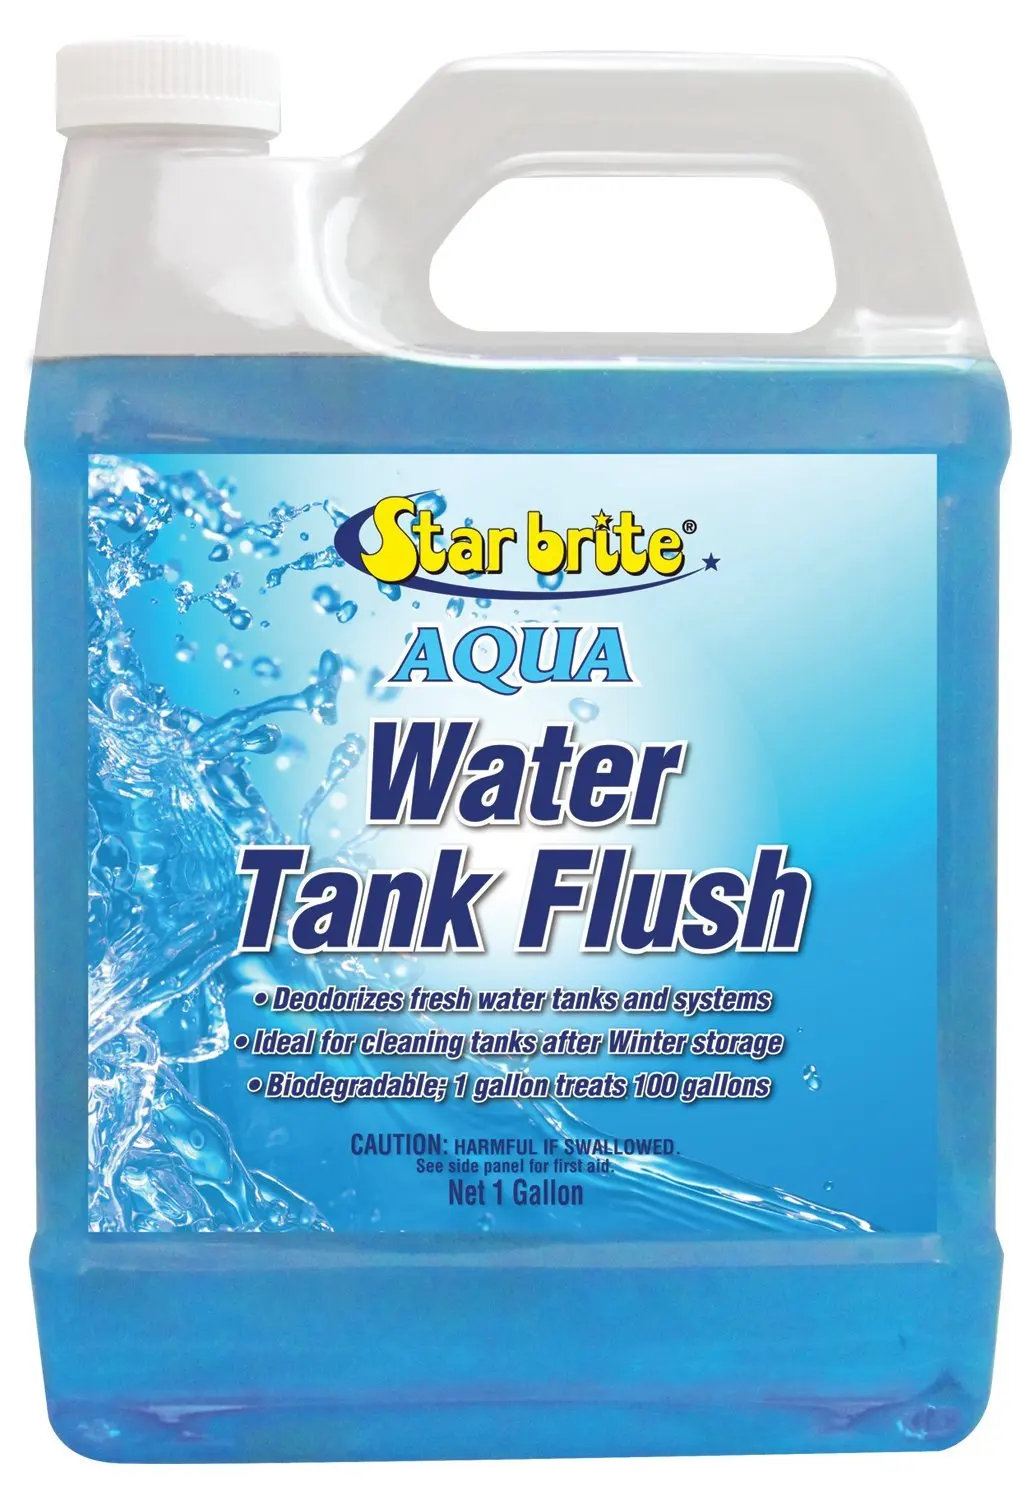 Star brite Aqua Clean Water Tank Flush - 1 gal. 